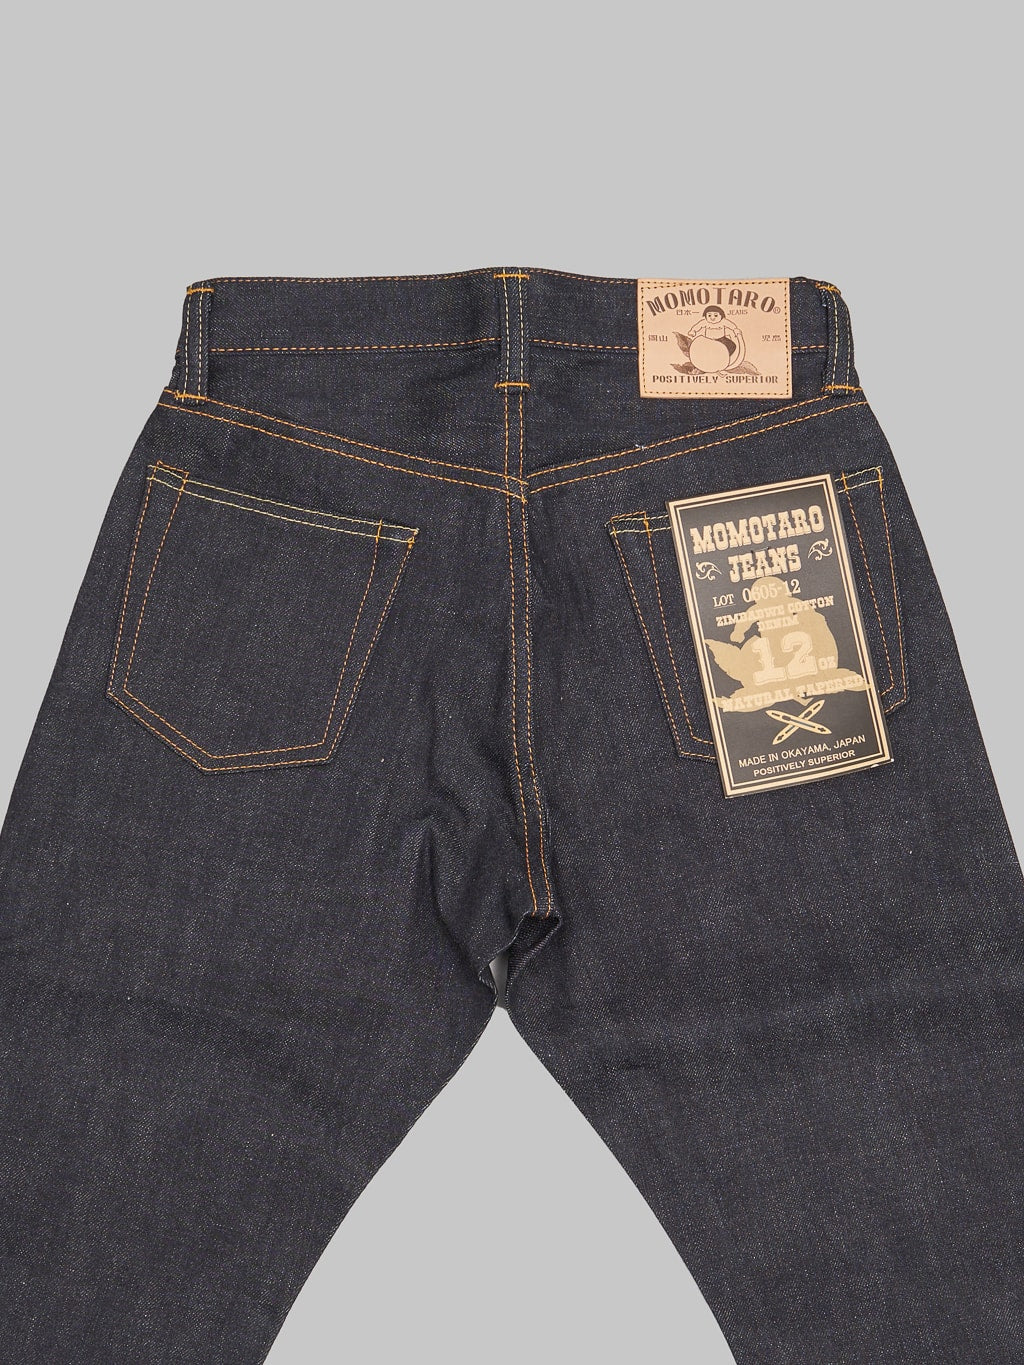 Momotaro 0605 12oz Natural Tapered Jeans back pockets